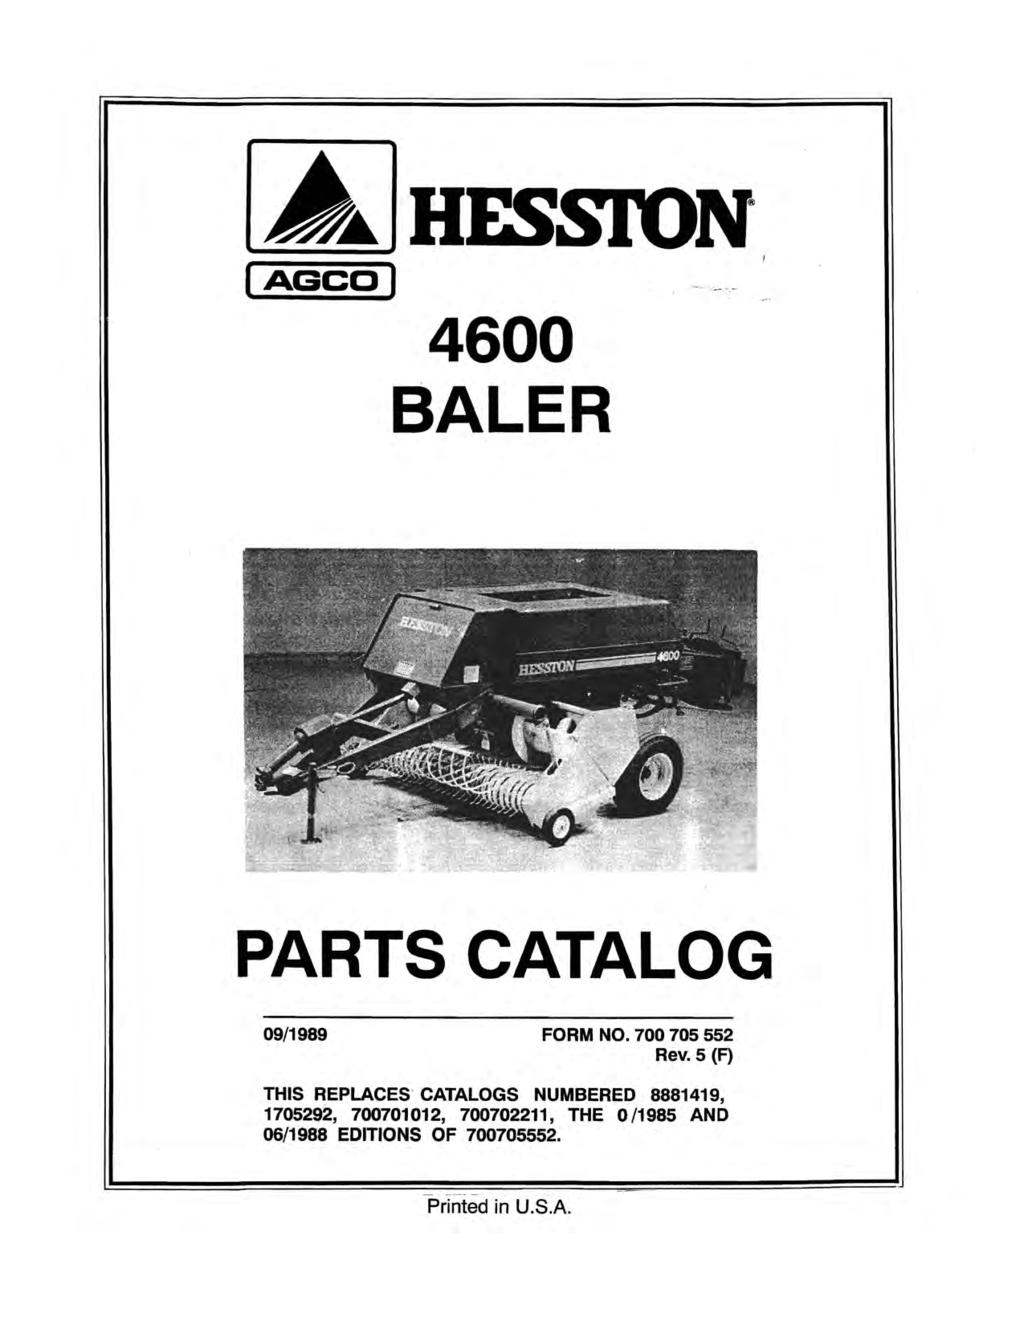 (AGee) HESSION 4600 BALER PARTS CATALOG 09/1989 FORM NO. 700 705 552 Rev.